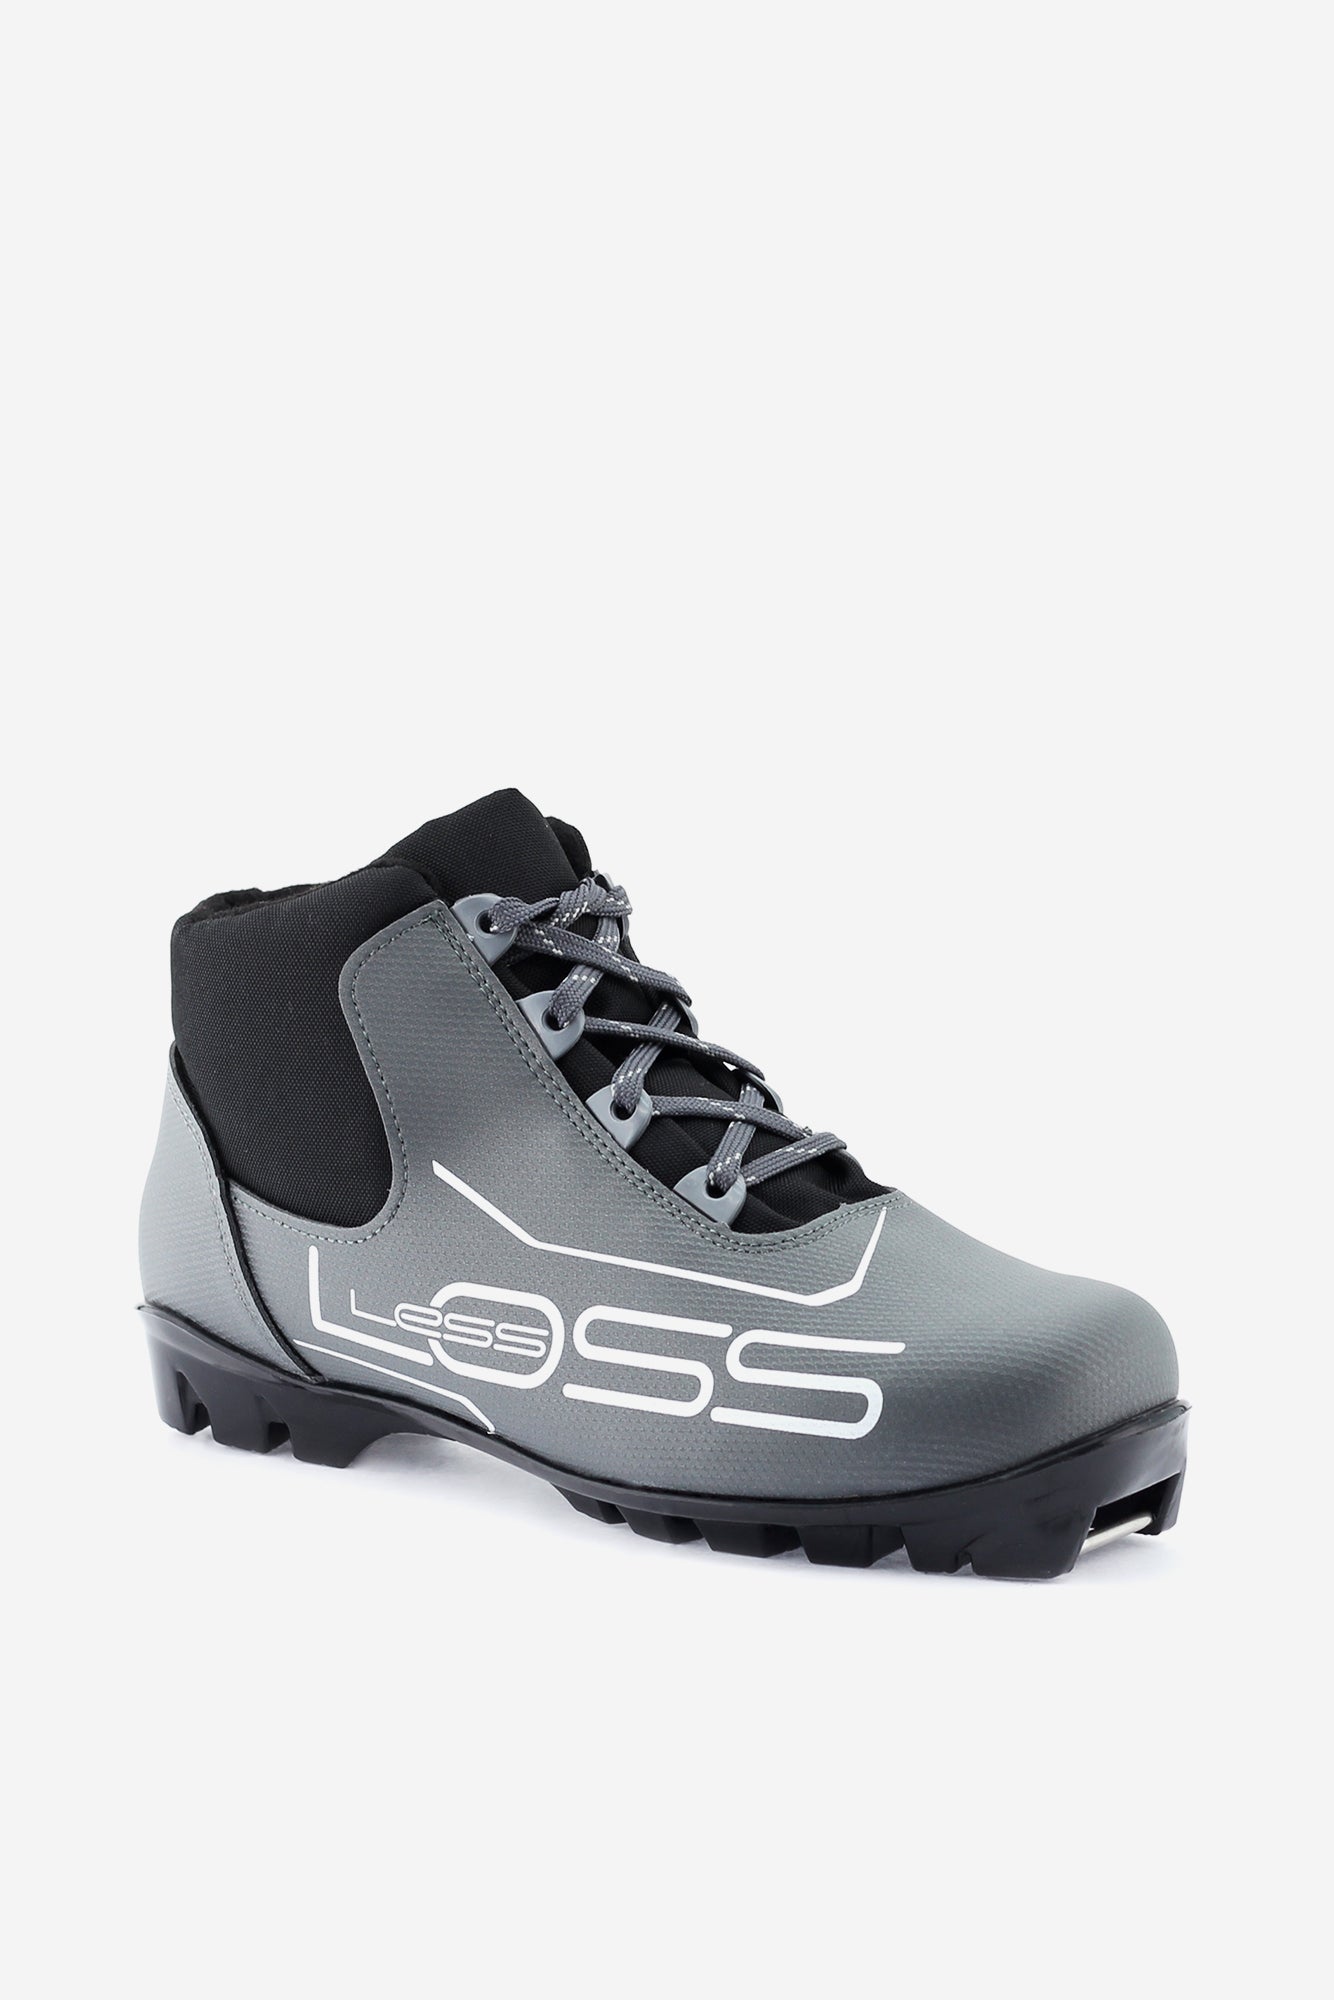 Loss 243 (NNN) Nordic Ski Boots Angle 1